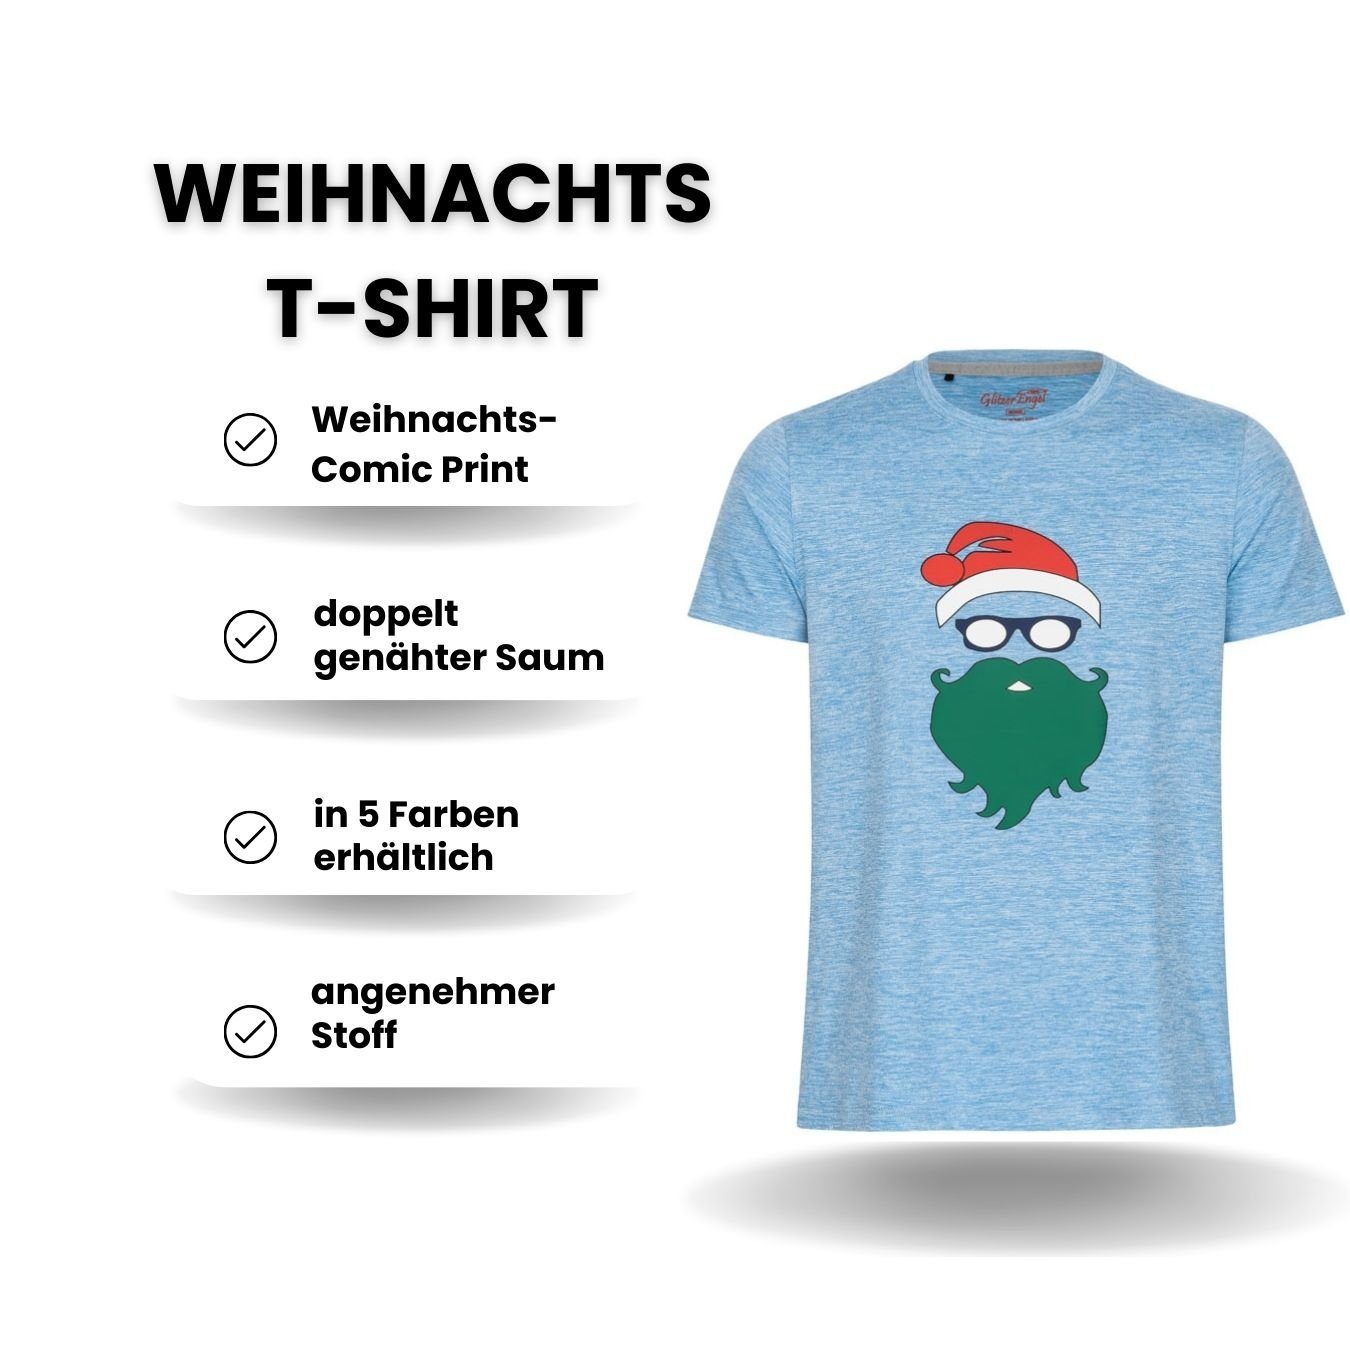 Printshirt Weihnachtsshirt T-Shirt Berlinsel grau Weihnachtsoutfit Männer Weihnachtsfoto Weihnachtsfeier, Herren Weihnachtsgeschenk,